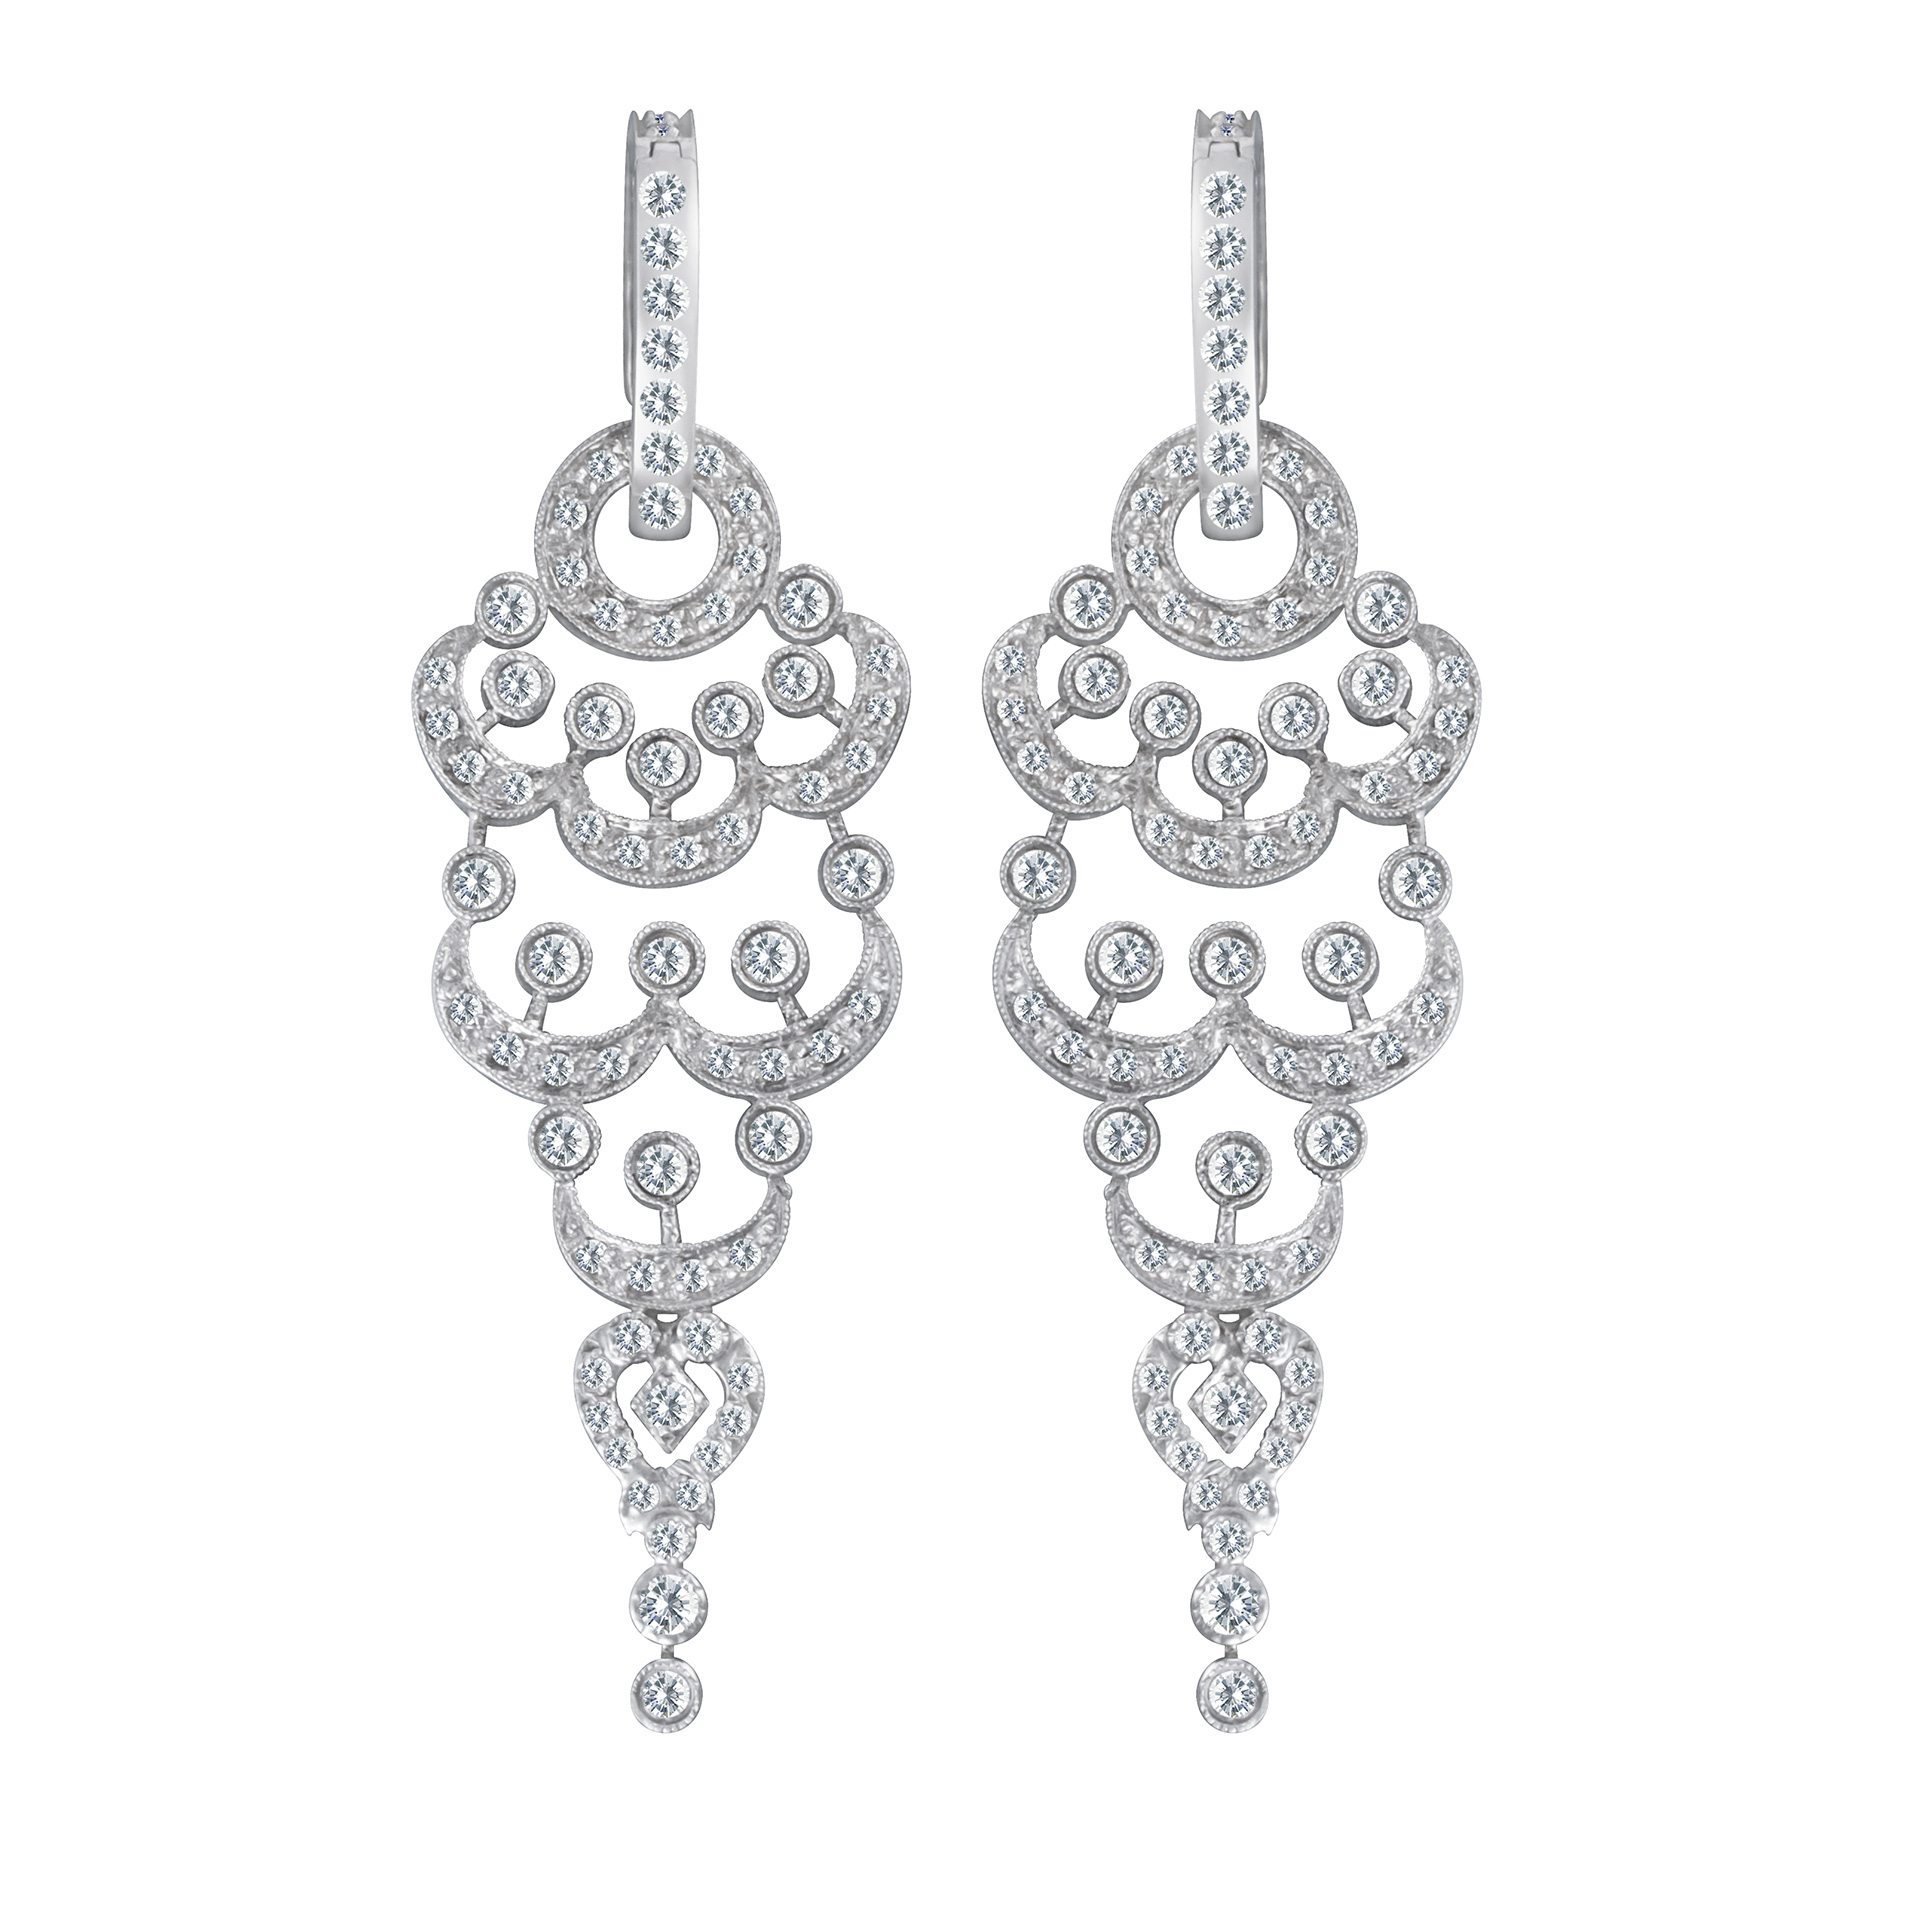 Chandelier drop earrings in 14k white gold